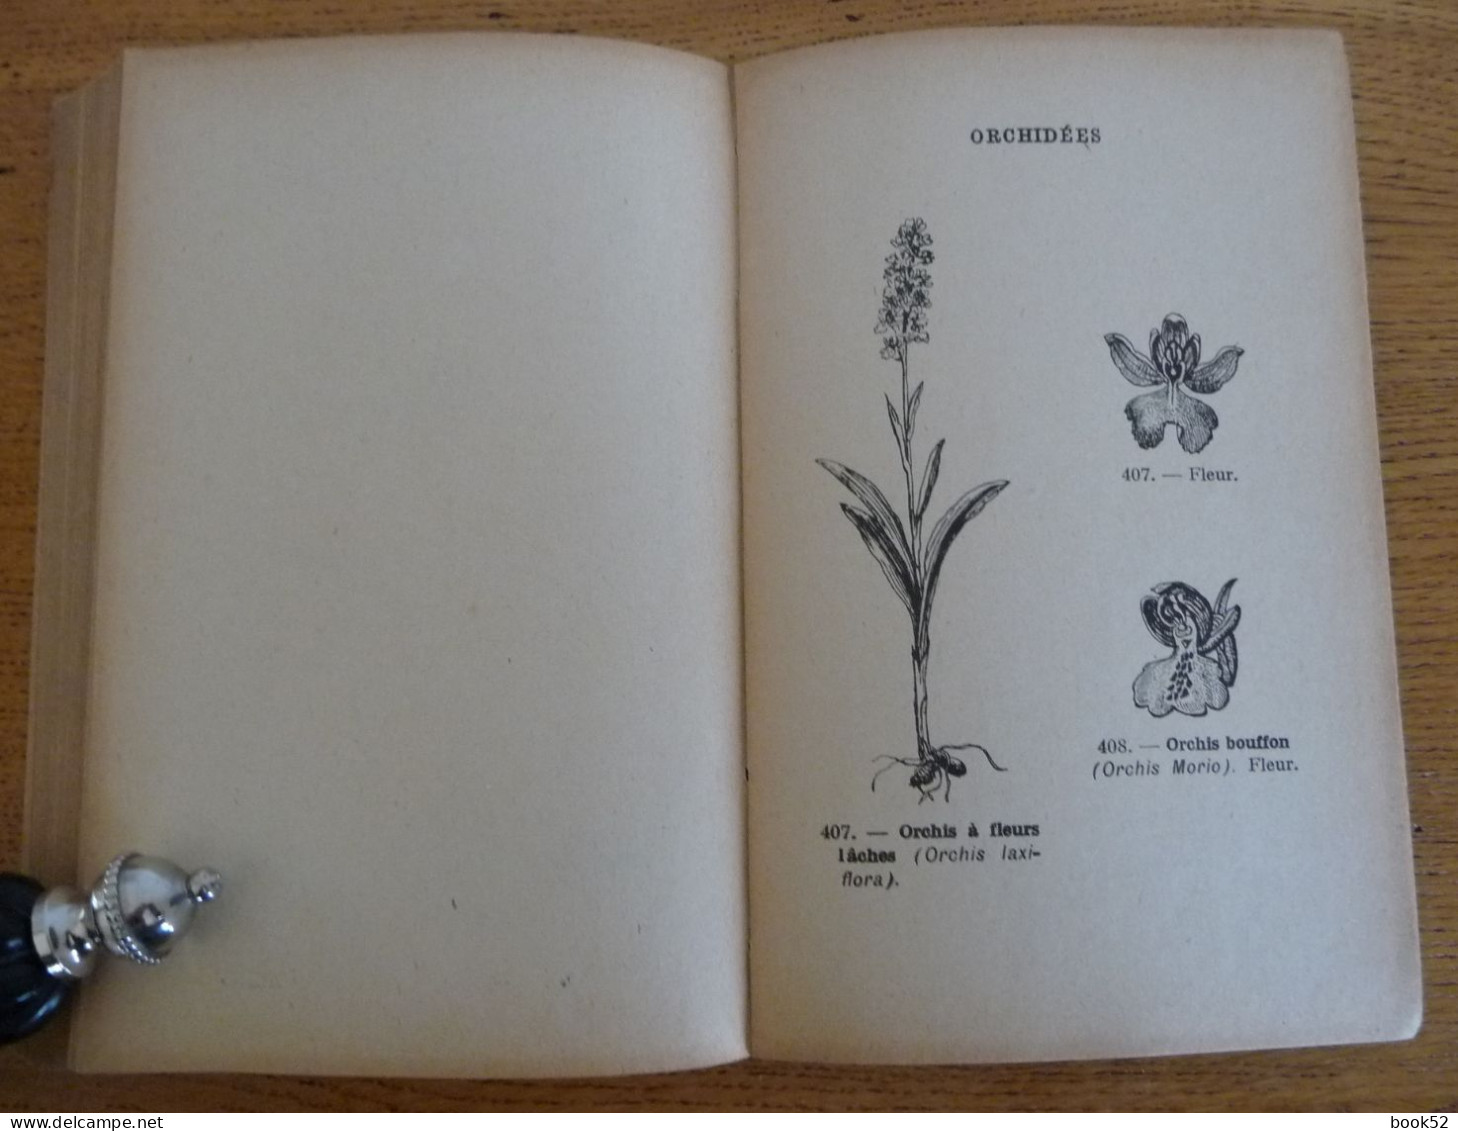 ATLAS de la FLORE SIMPLIFIEE par l'Abbé Th. Moreux (1925) (Pour reconnaître les Fleurs)